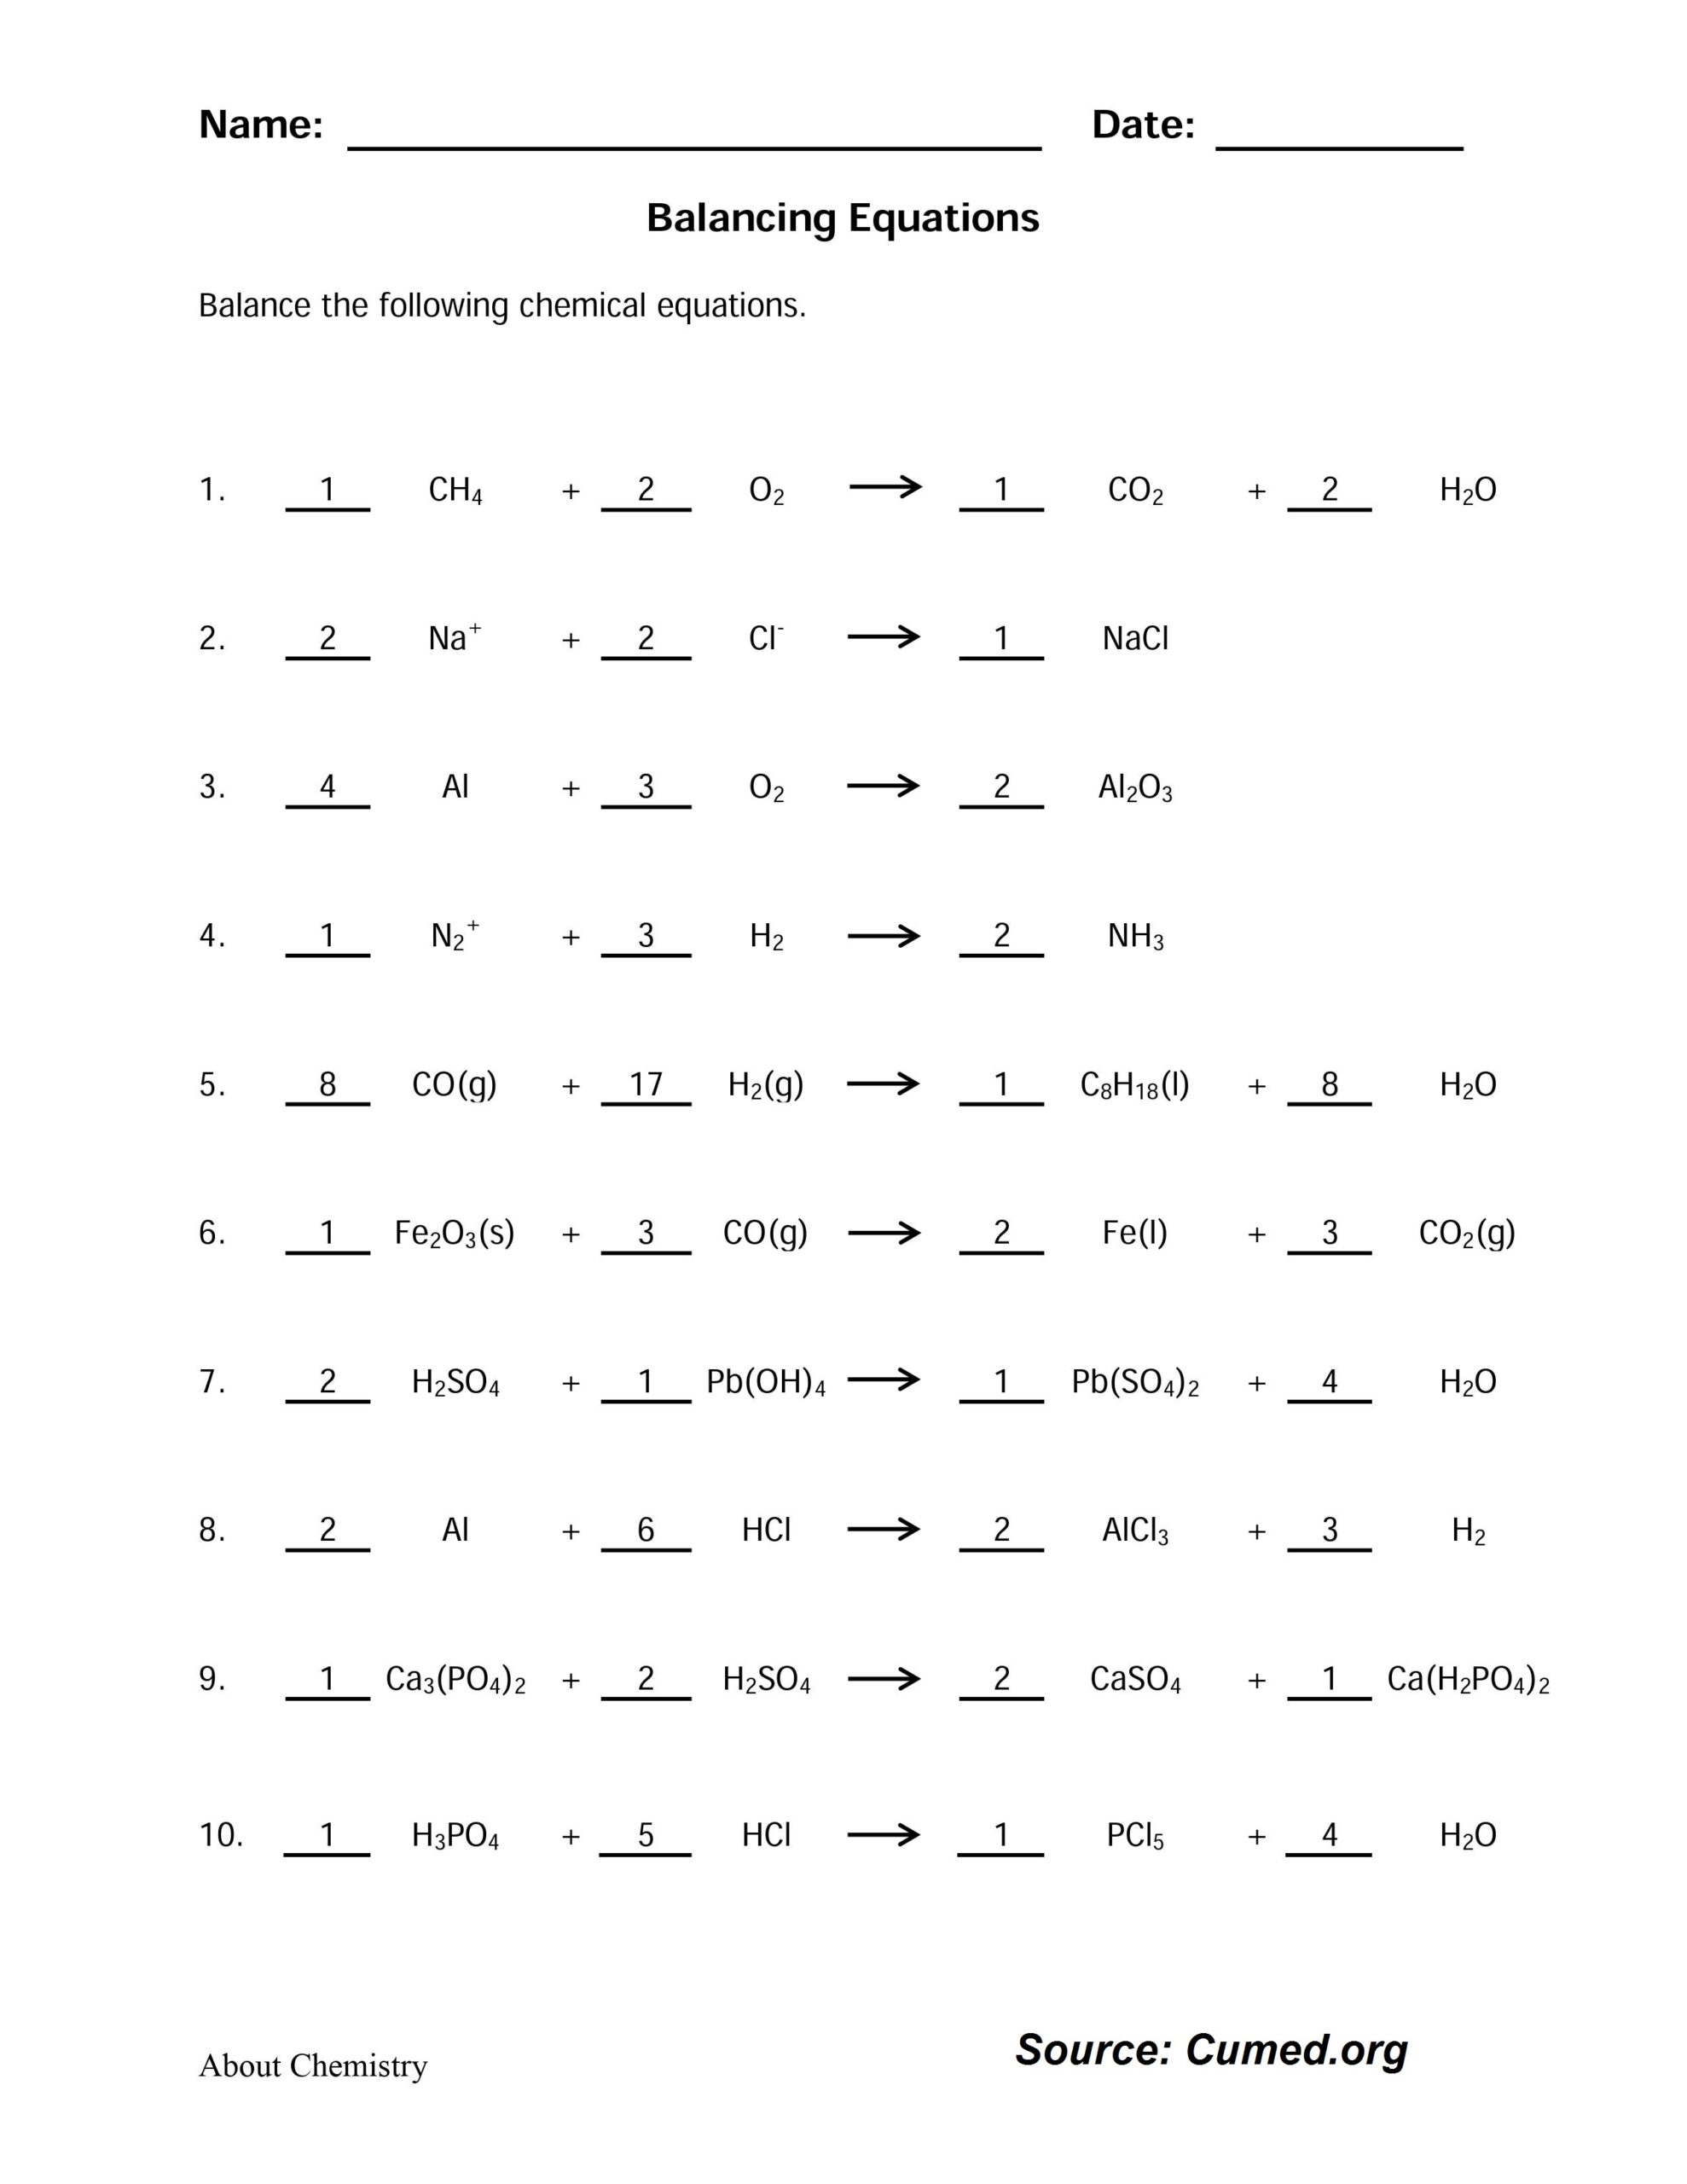 Balancing Equations Worksheet Answer Key 2